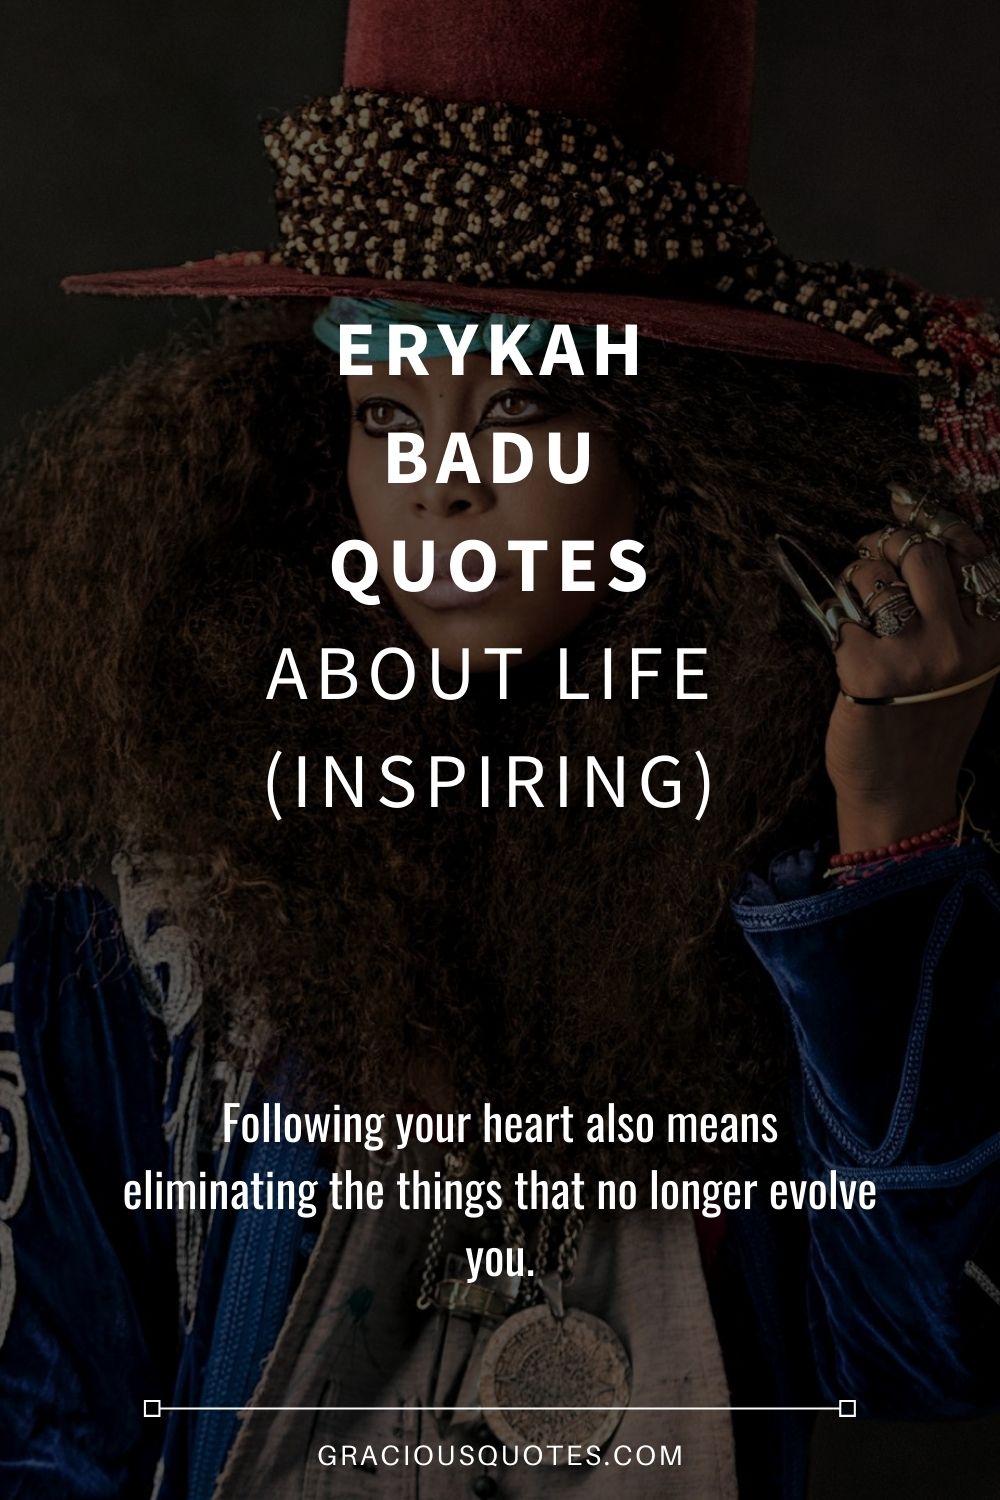 Erykah Badu Quotes About Life (INSPIRING) - Gracious Quotes